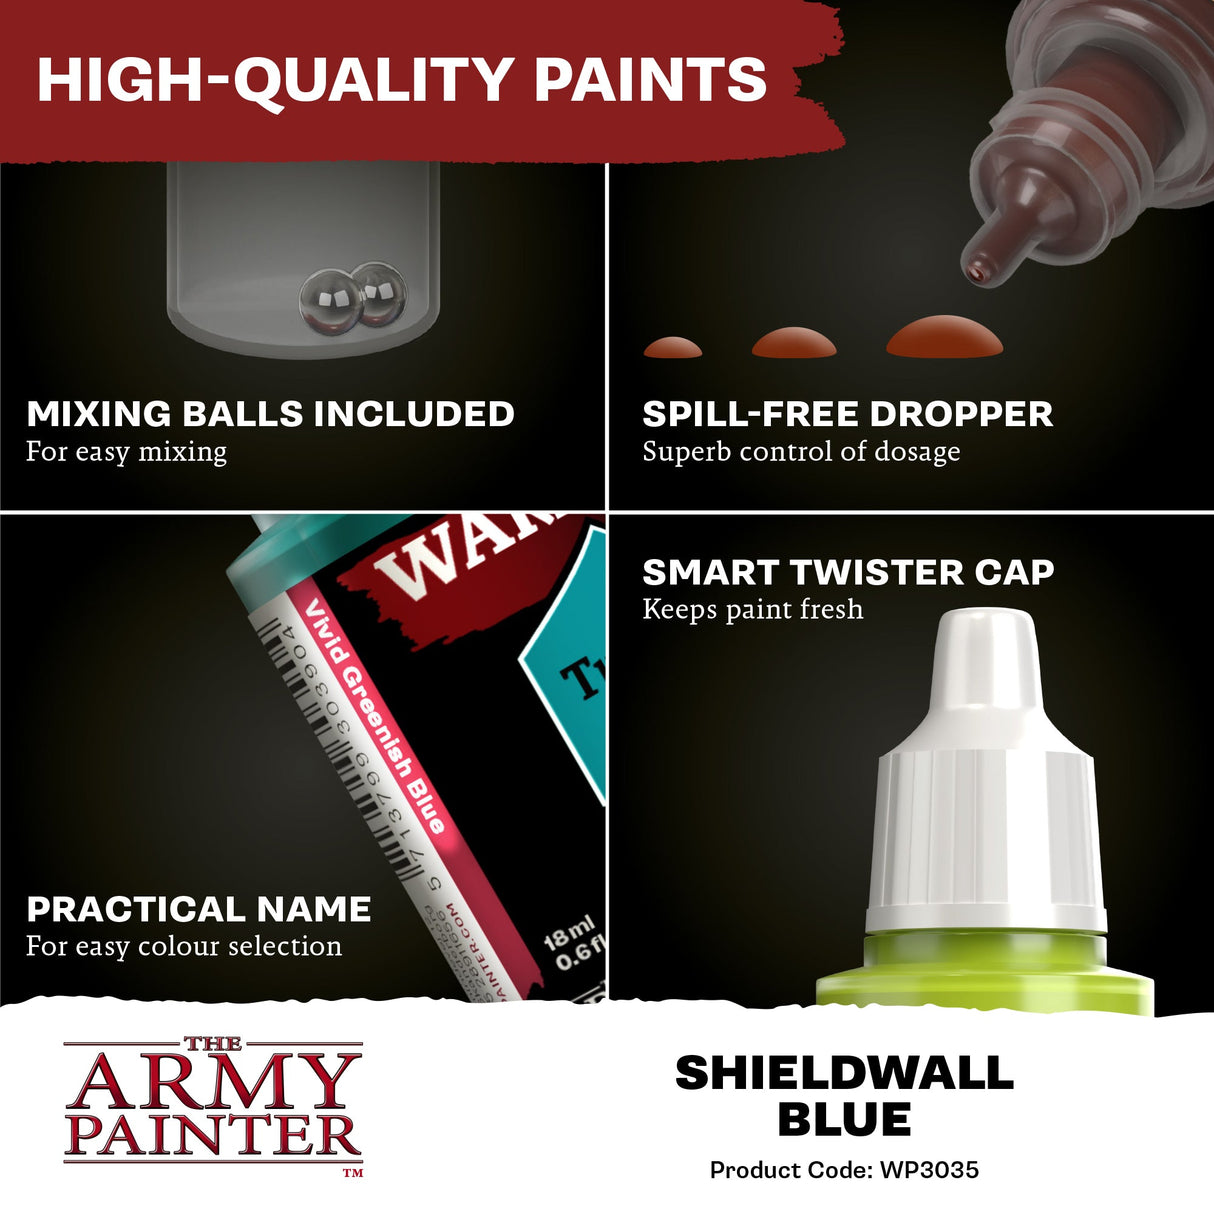 The Army Painter - Warpaints Fanatic: Shieldwall Blue